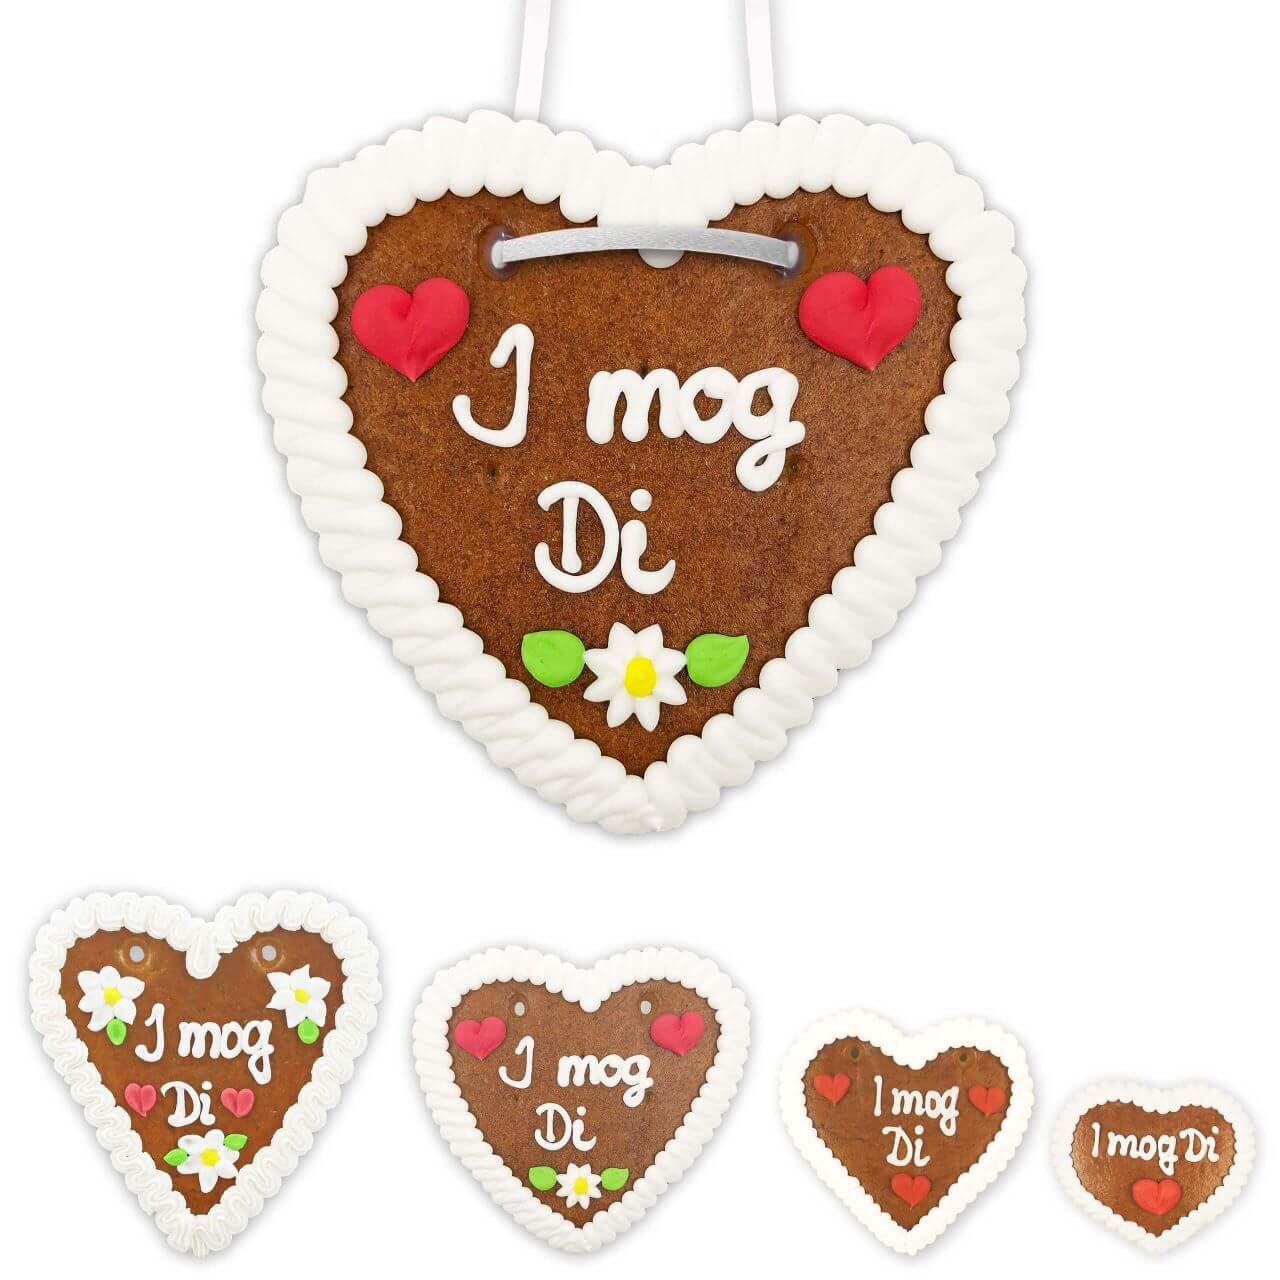 Gingerbread Heart - I mog Di